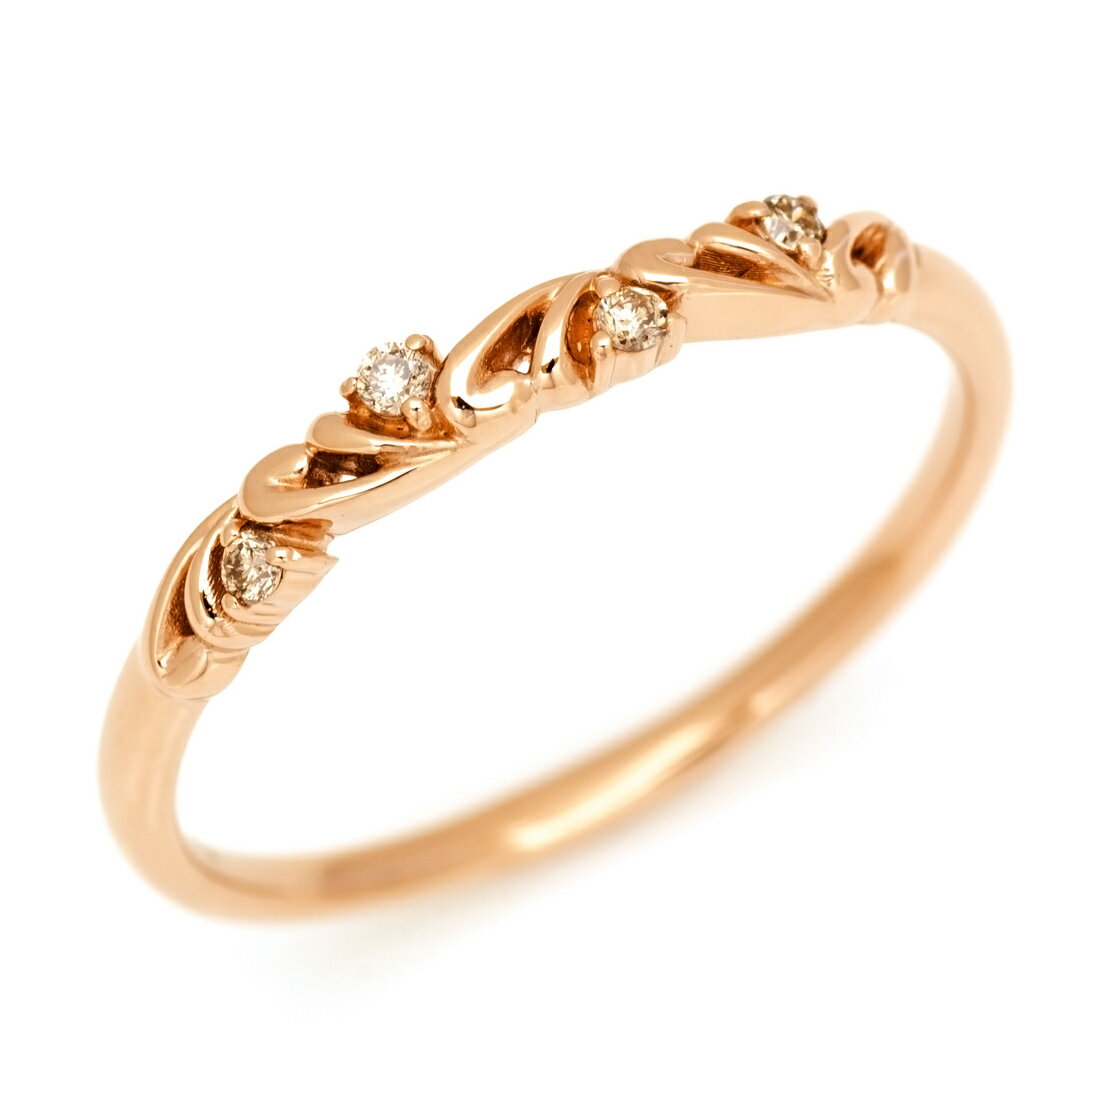 K18 ブラウンダイヤモンド リング 「arabesco」 指輪 ダイアモンド ゴールド 18K 18金 スクロール アラベスク 誕生日 4月誕生石 刻印 文字入れ メッセージ ギフト 贈り物 ピンキーリング対応可能